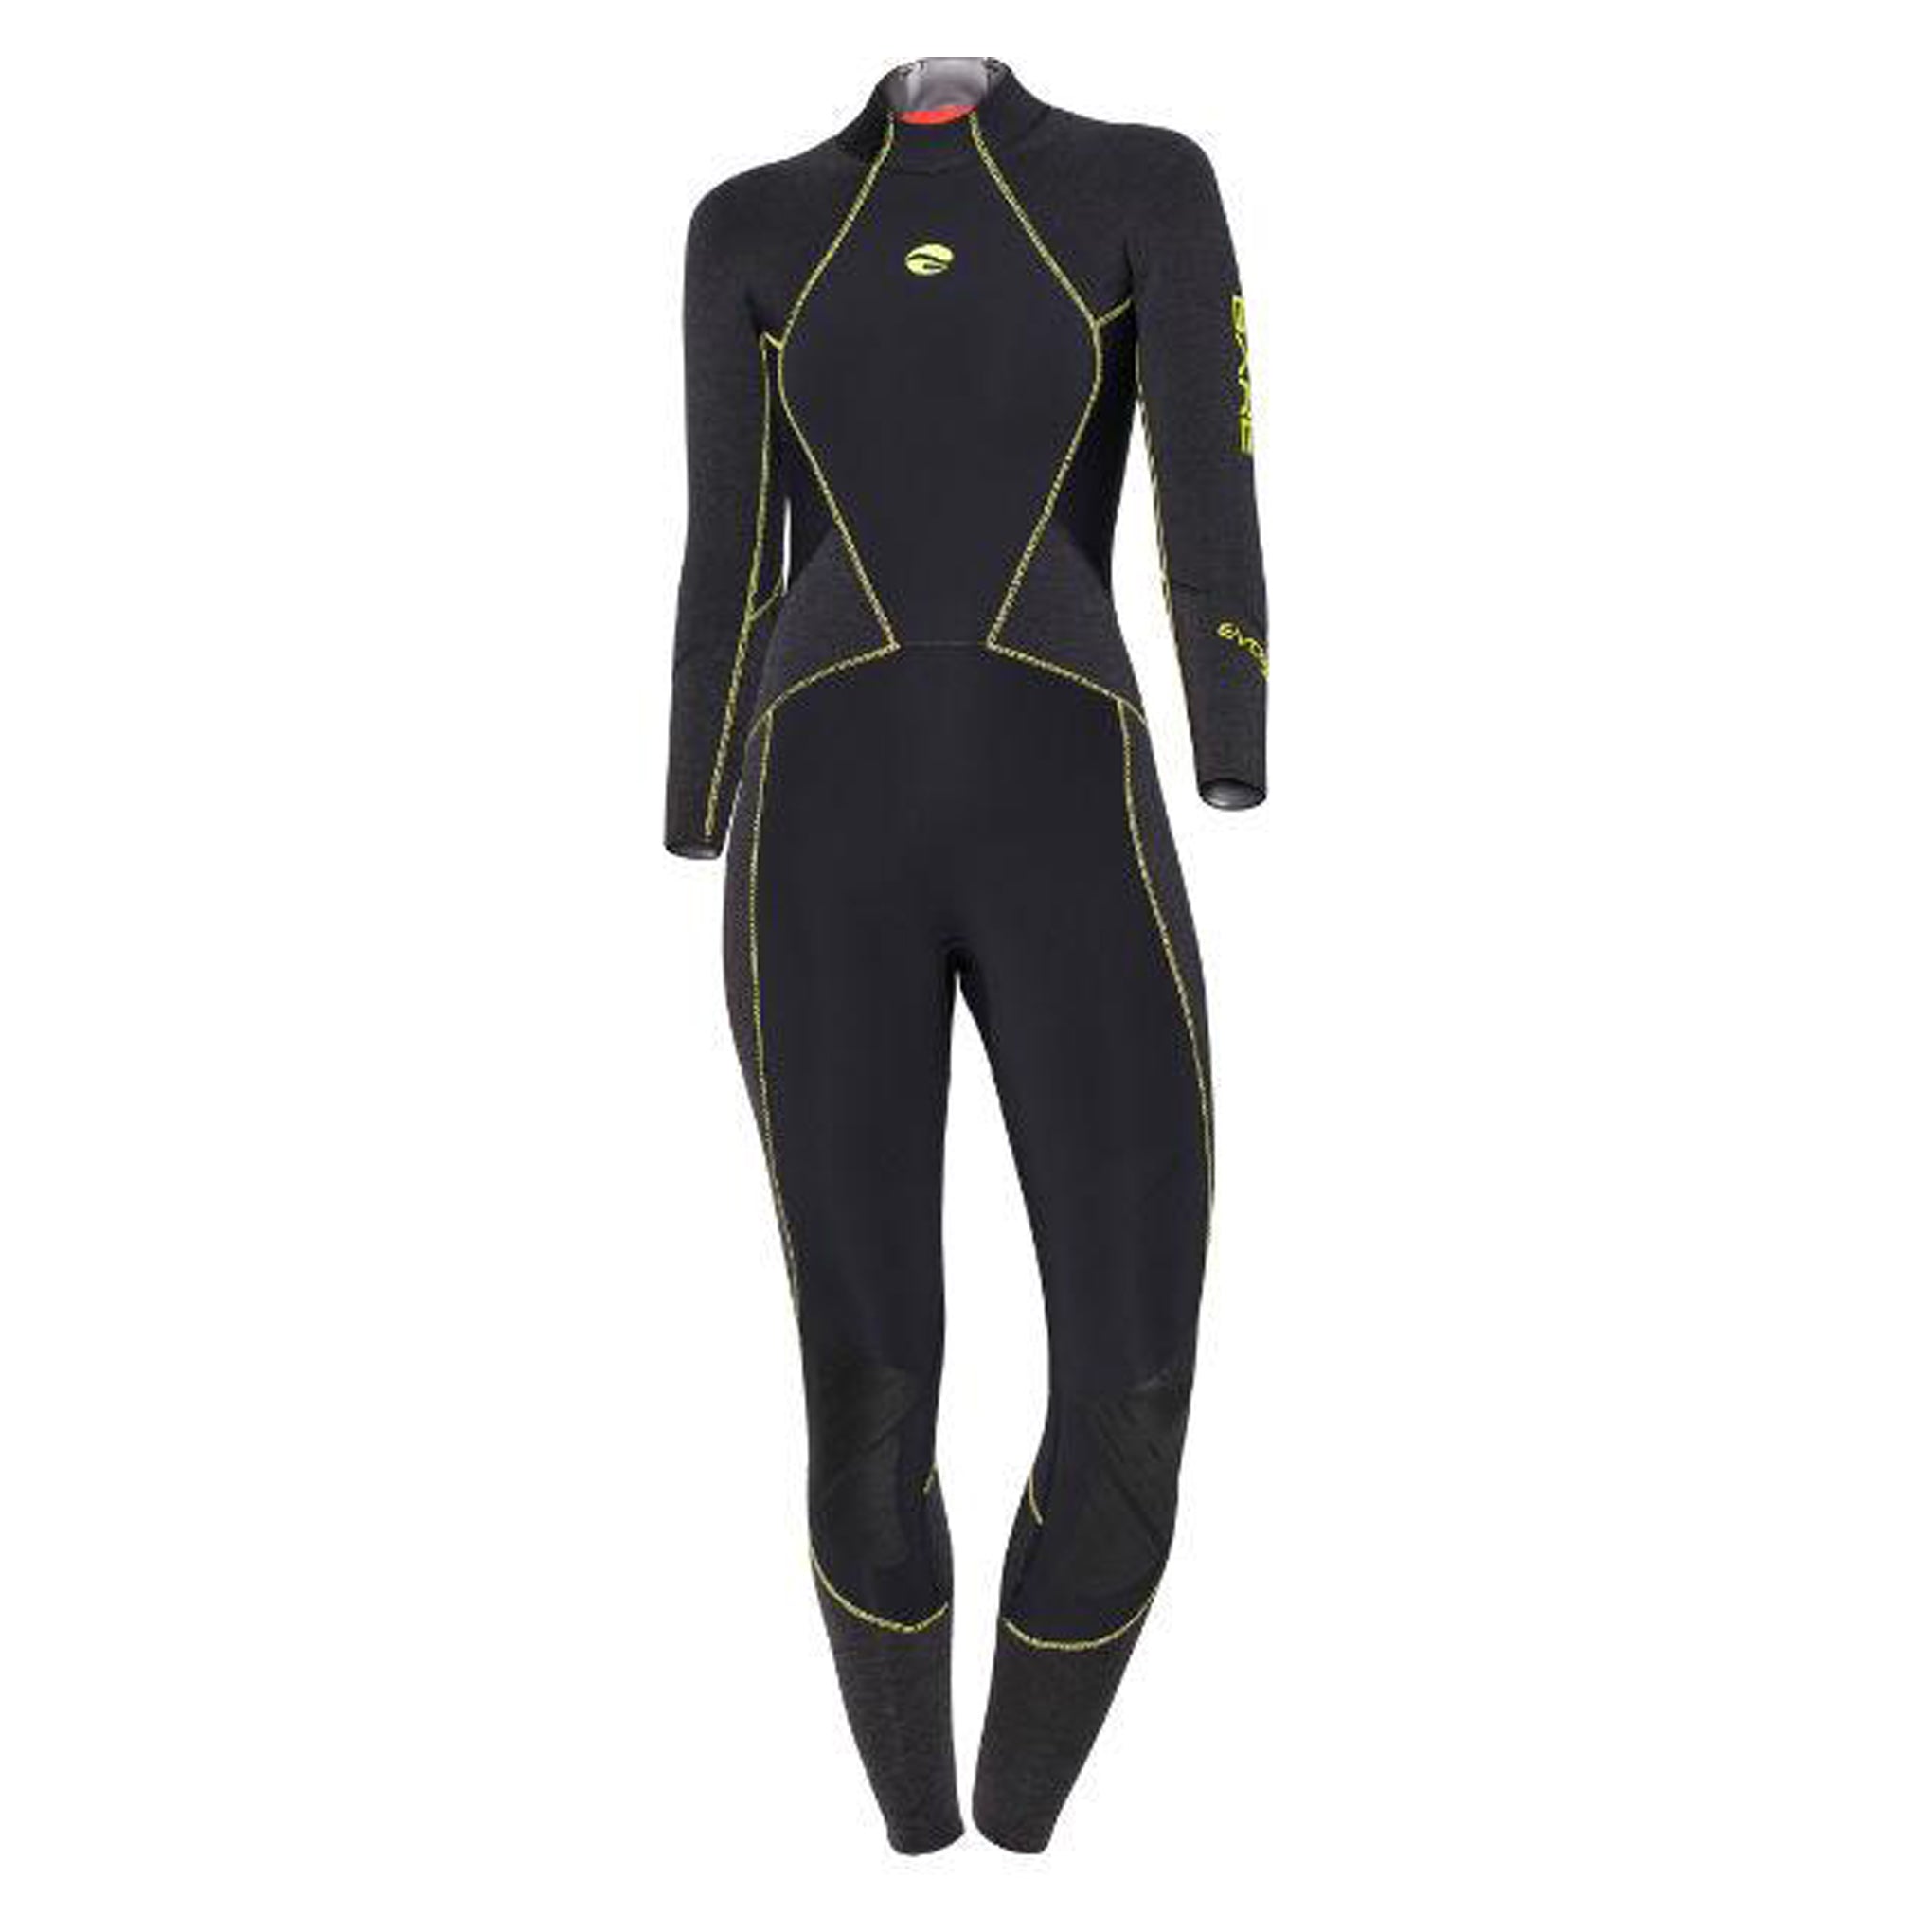 7mm Evoke Full - Women's-Wetsuits-Snorkeling, diver, sharkskin, scuba diving hk, warm protection, sharkskin, dive wear, bare wetsuit, aeroskin wetsuit, 浮潛